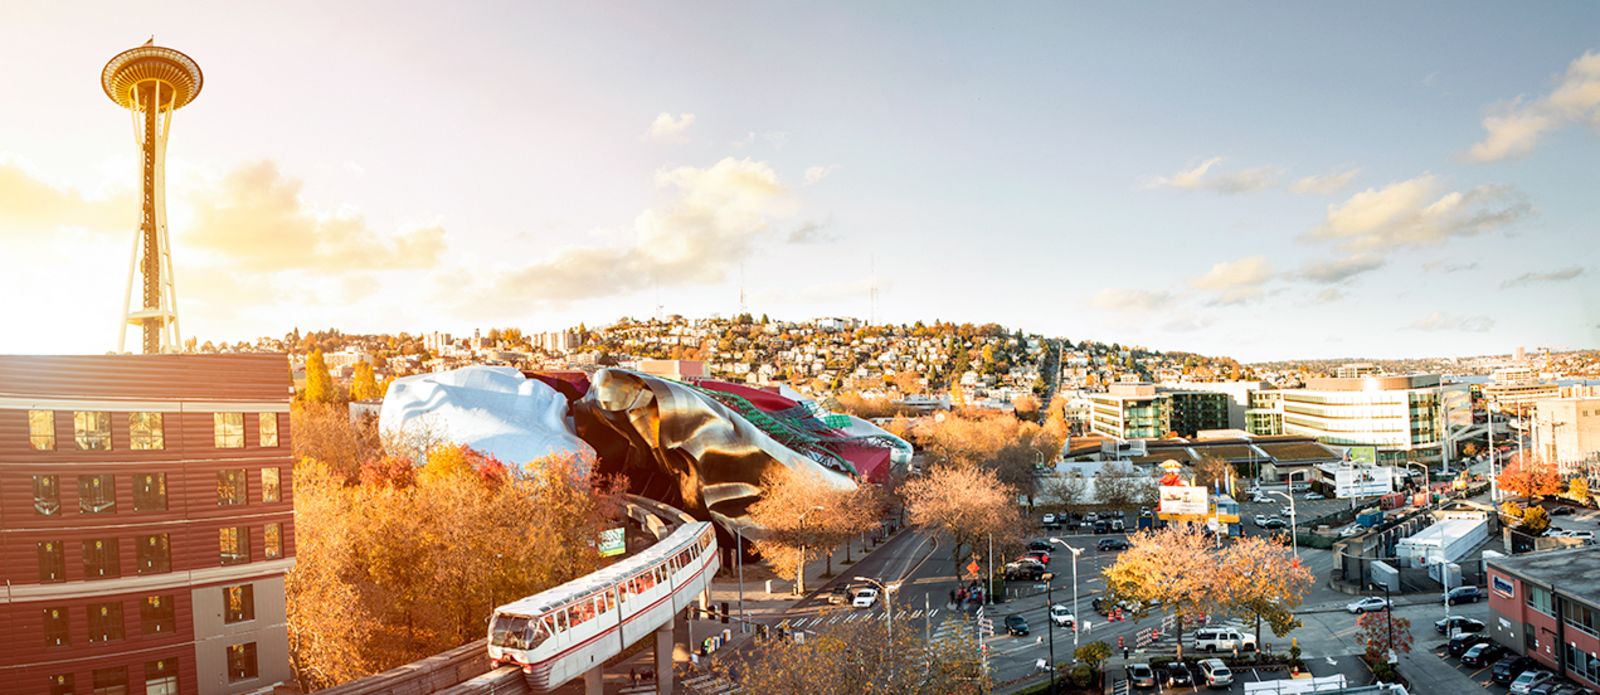 Eine Monorail Bahn fÃ¤hrt in das Museum of Pop Culture in Seattle